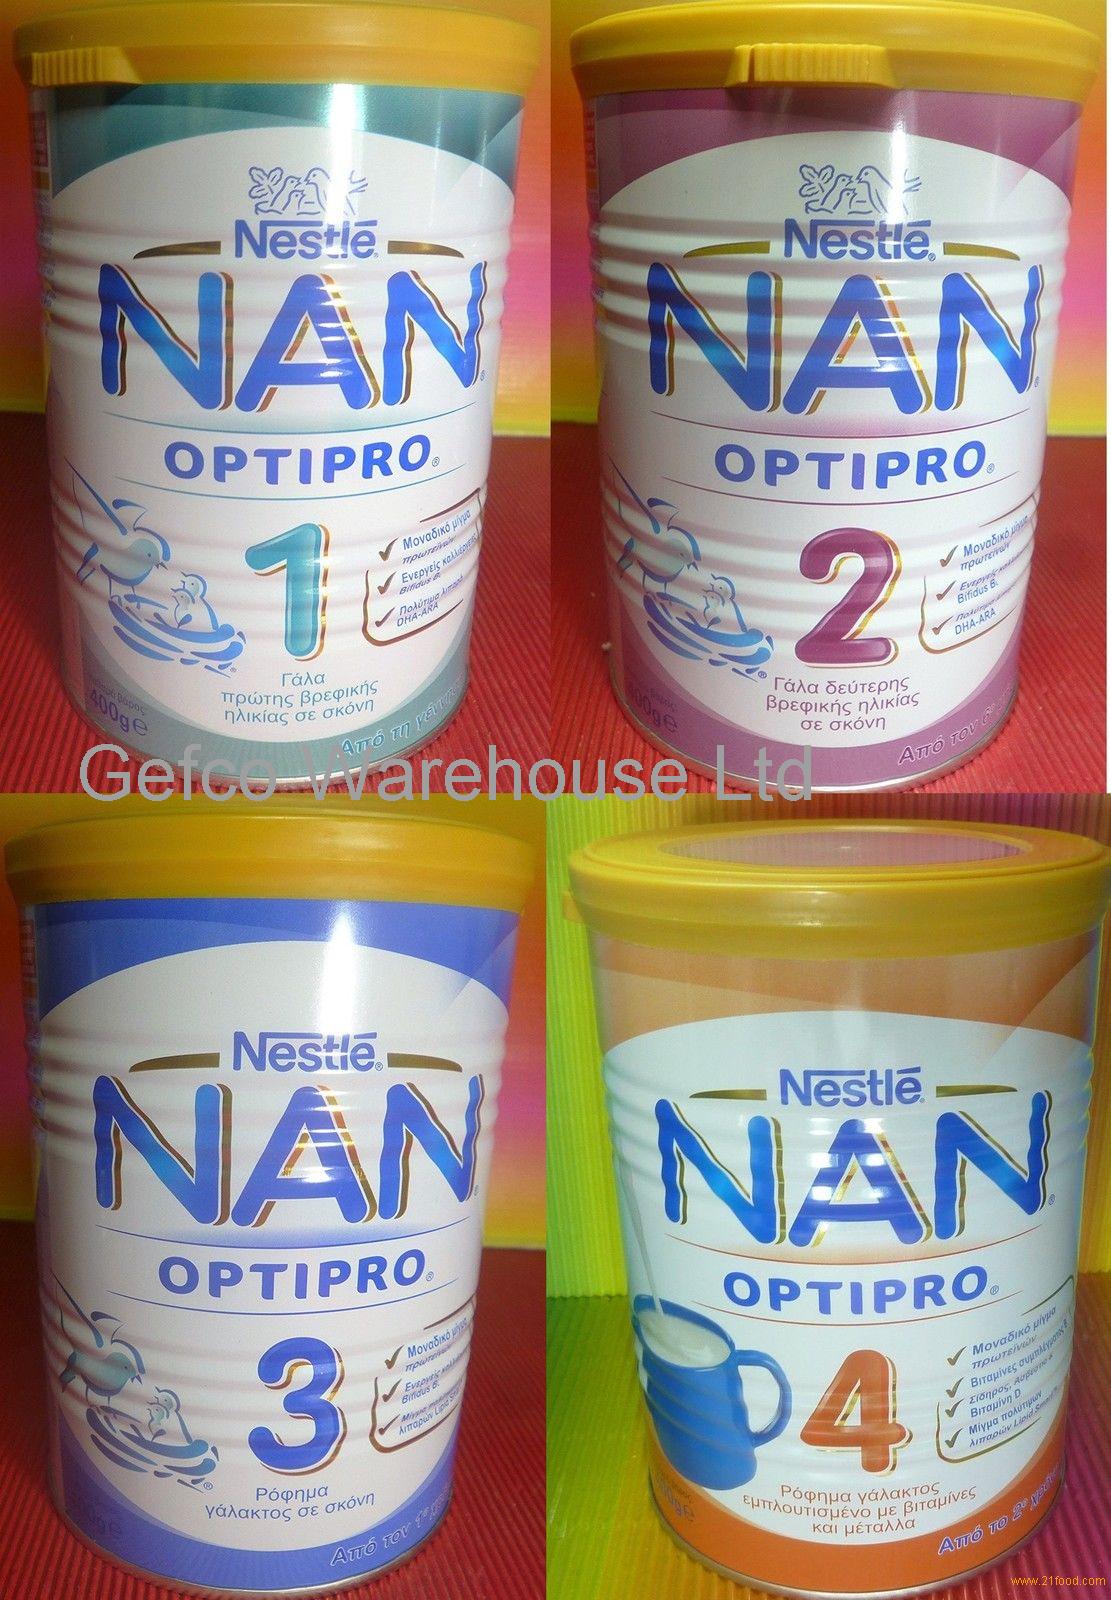 nan pro 2 wholesale price